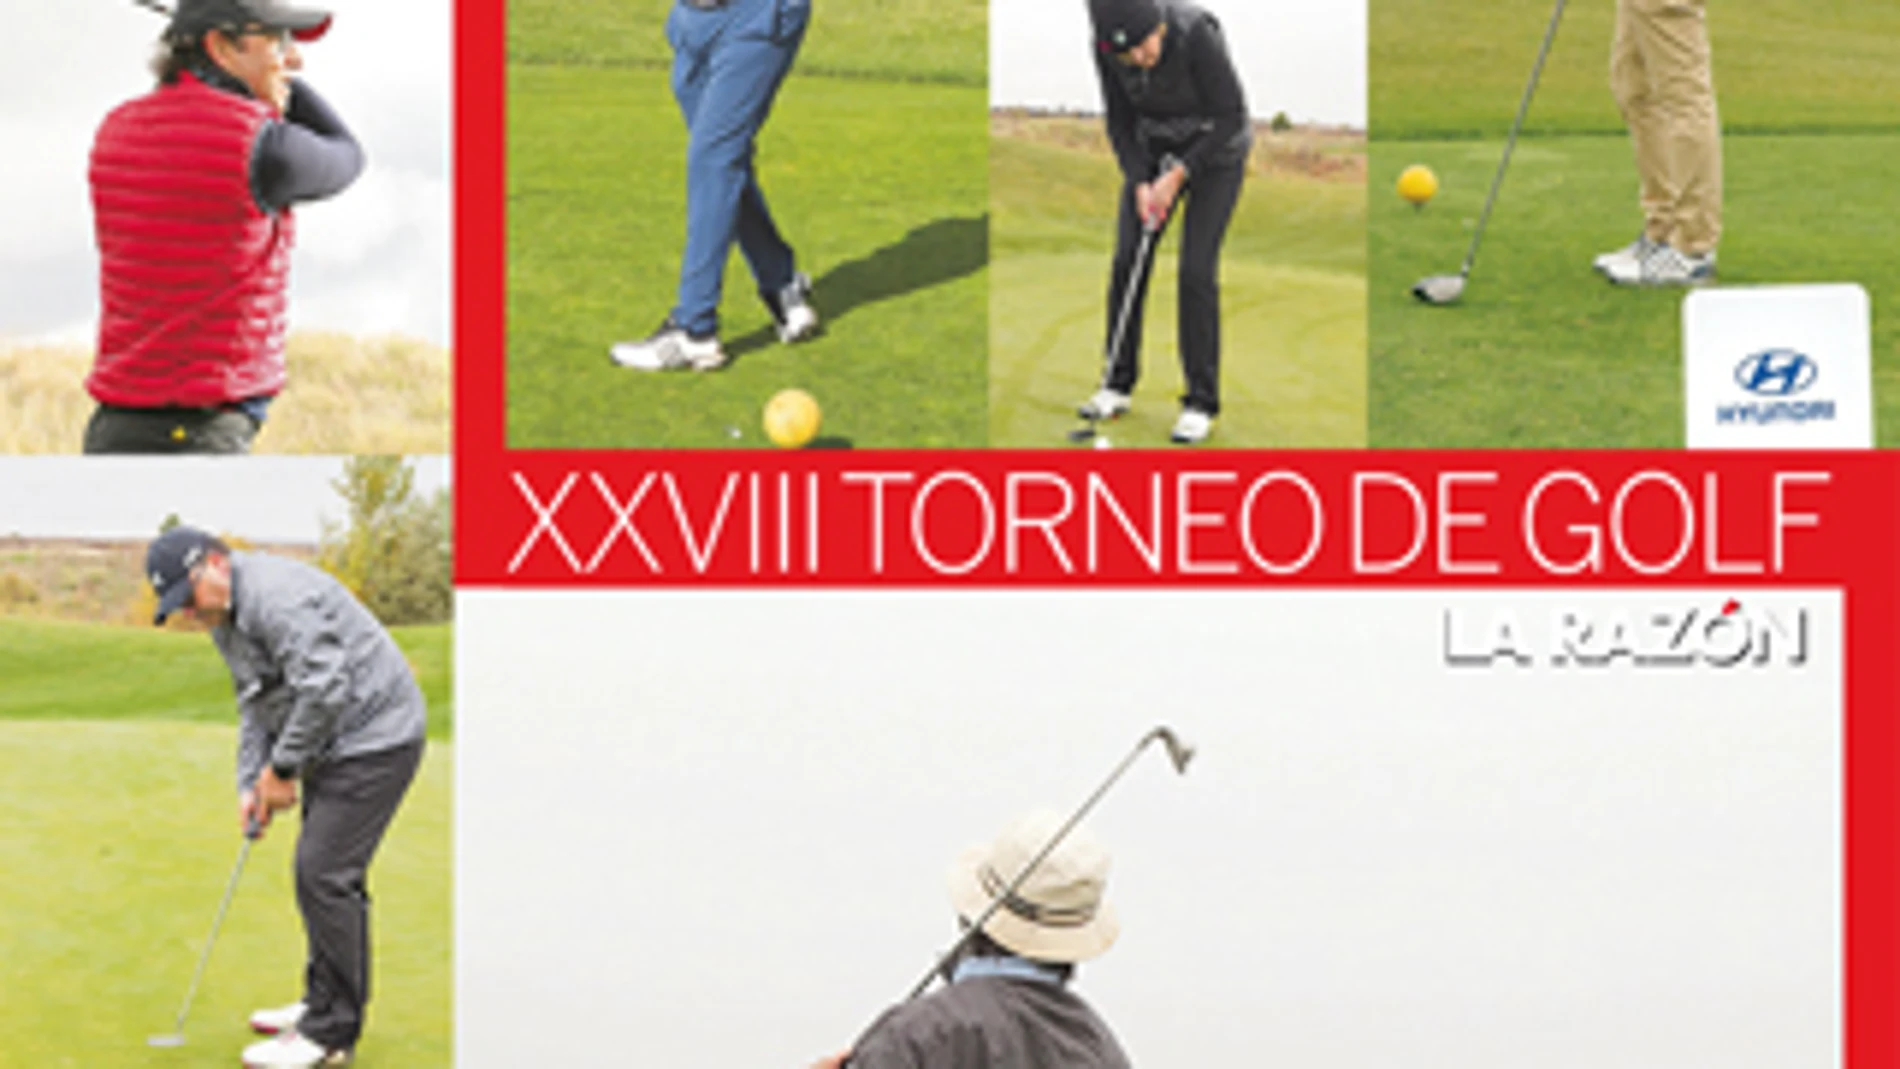 XXVIII Torneo de Golf La Razón